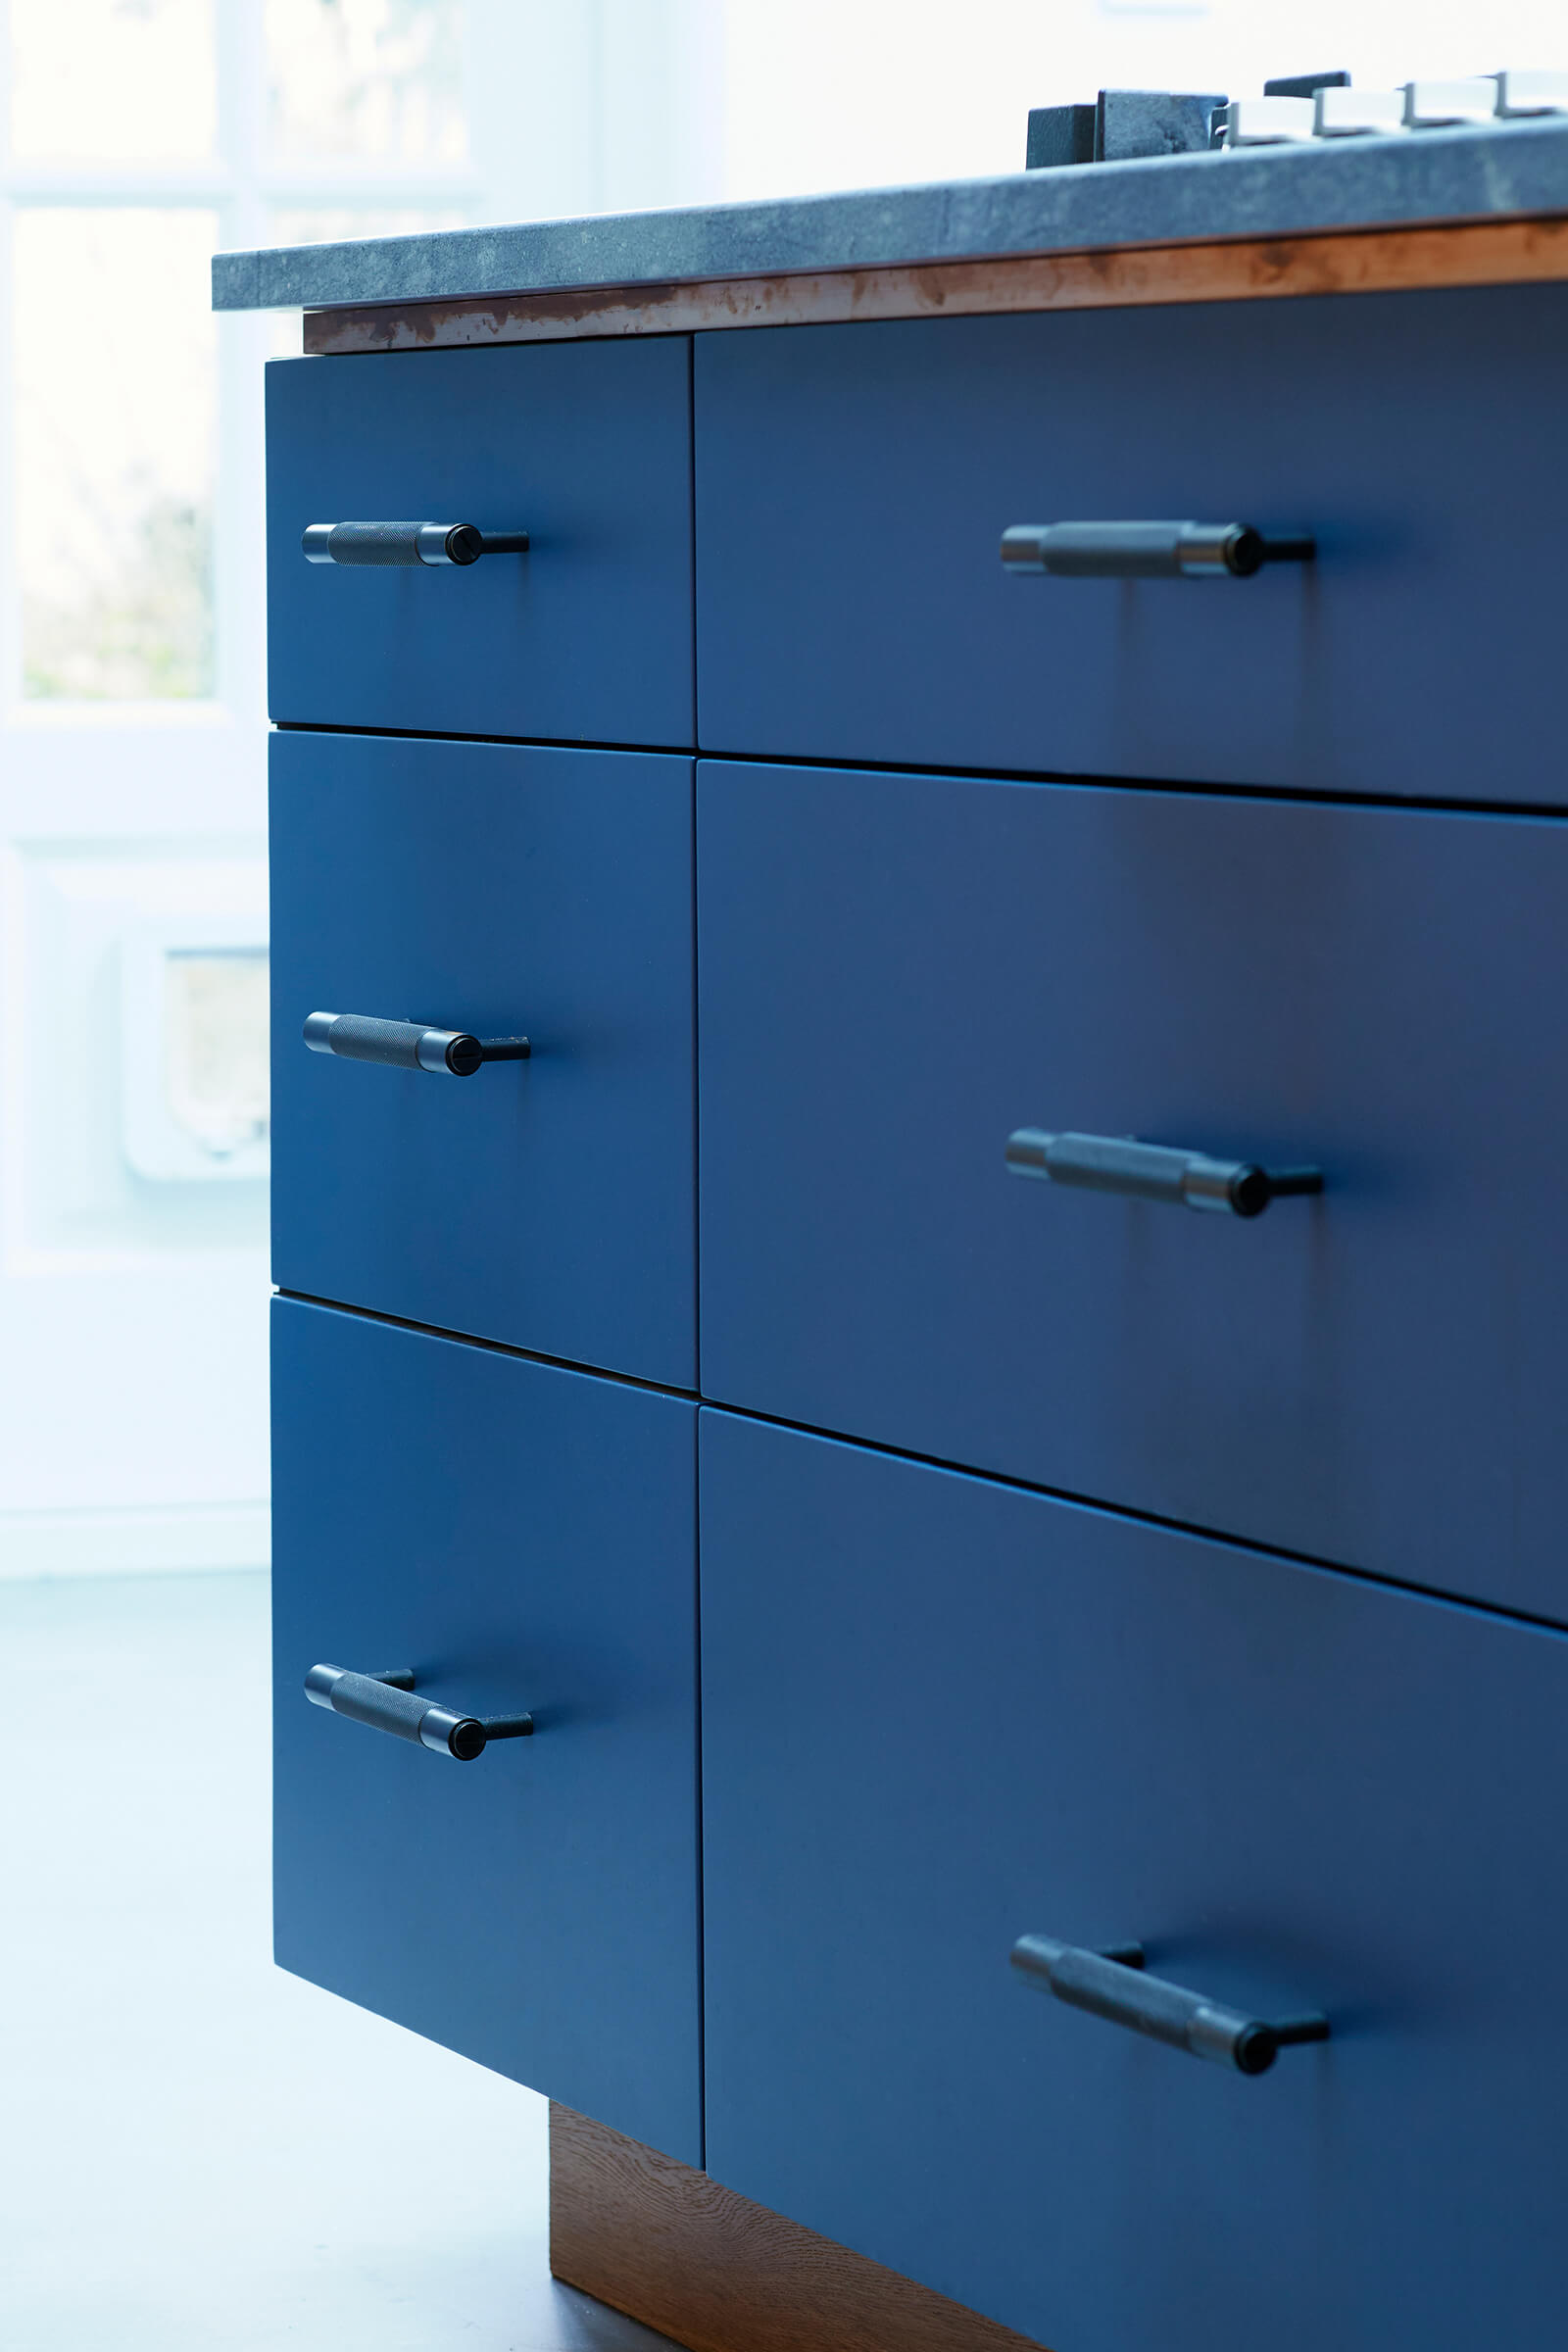 Blue kitchen cabinets hand-crafted by Splinterworks